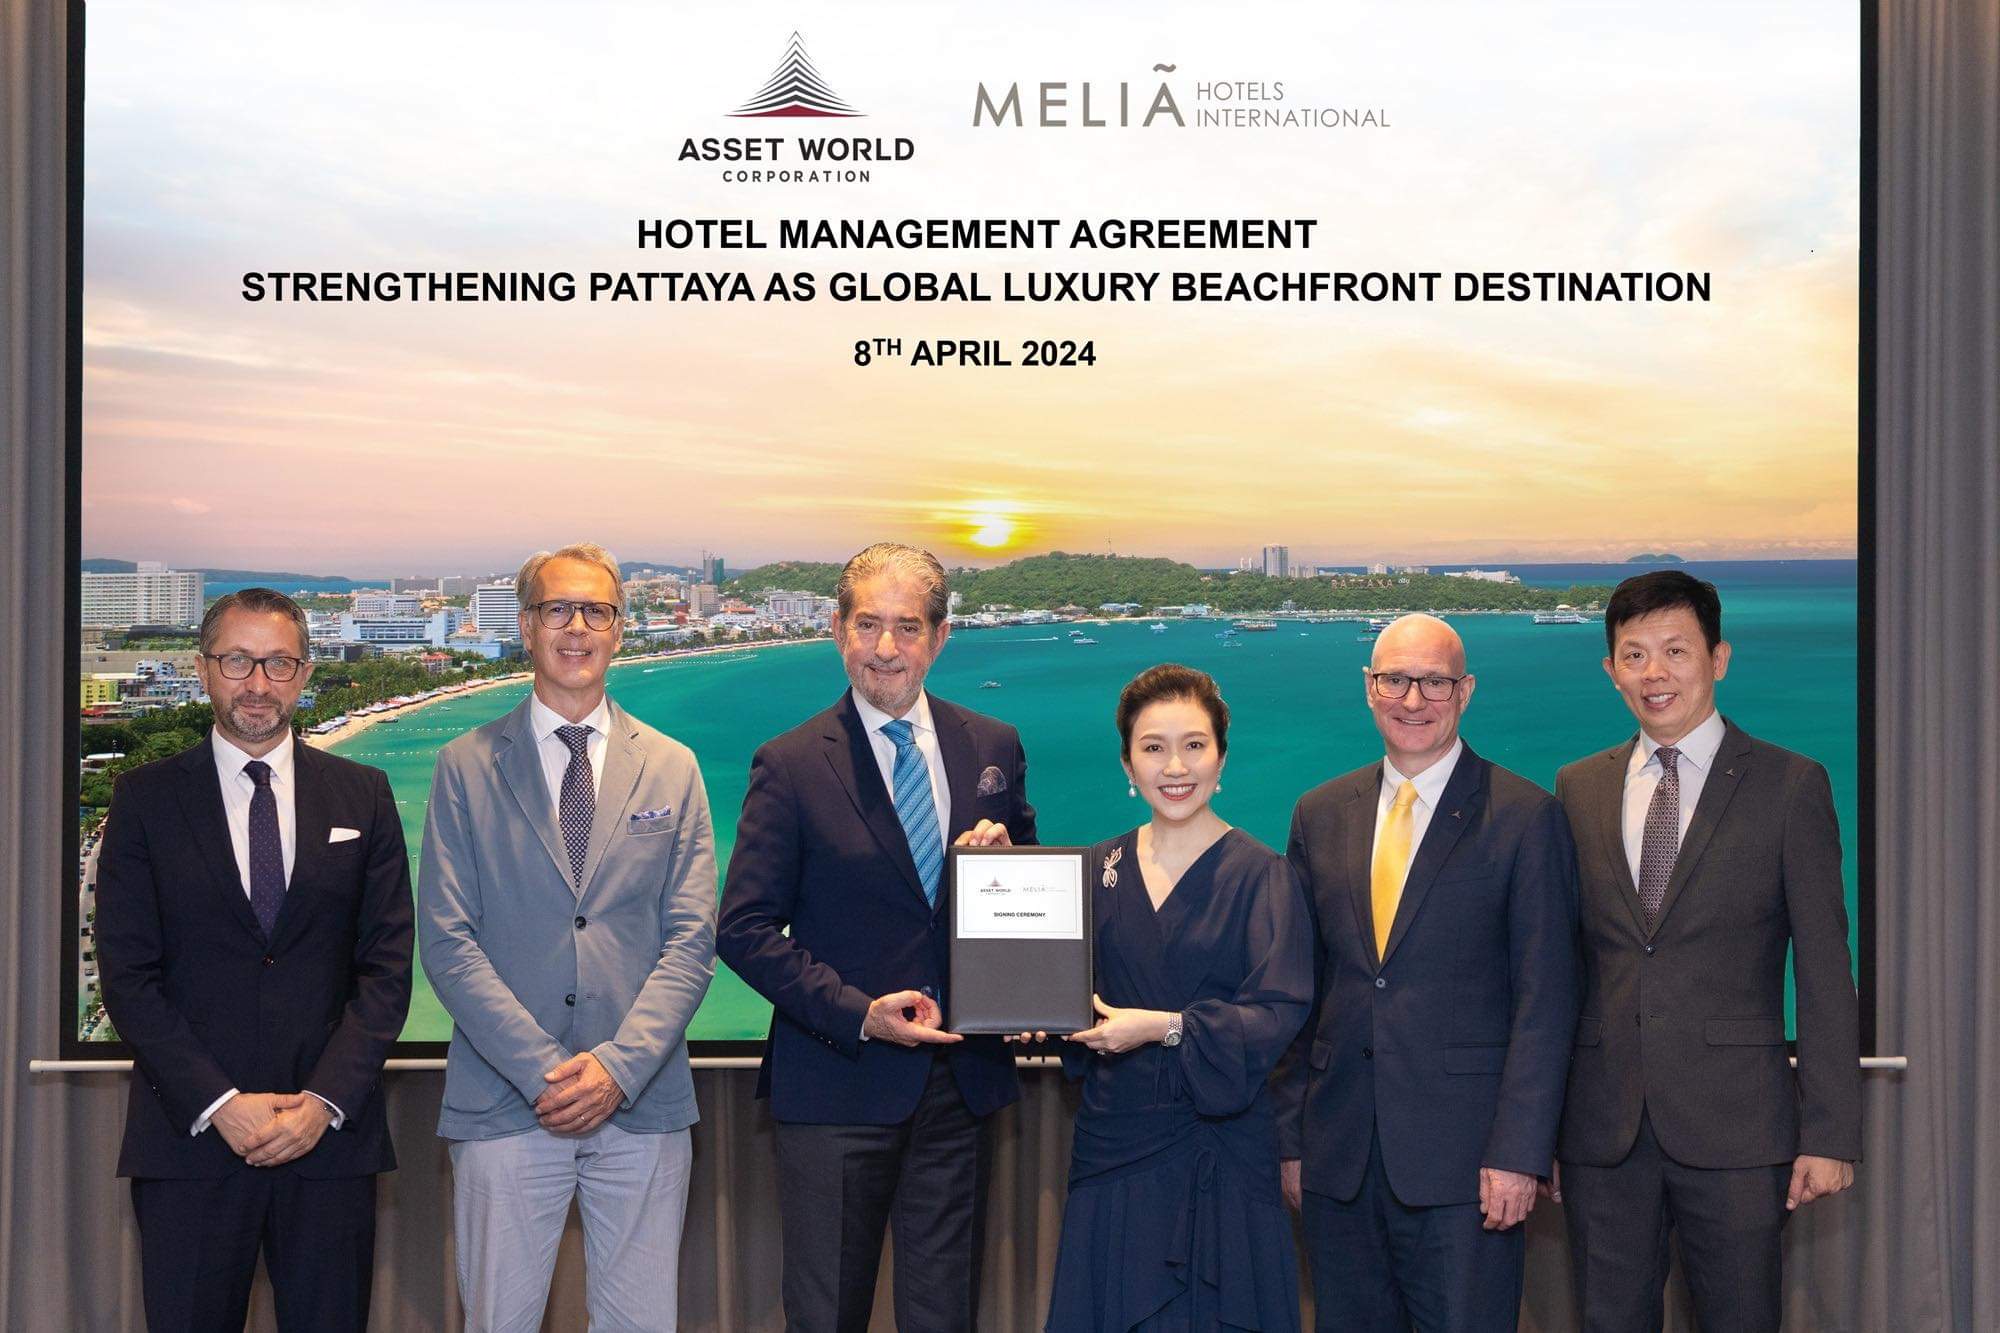 AWC-Meliá เซ็นสัญญาร่วมพัฒนา 2 โรงแรมหรูริมทะเลในพัทยา